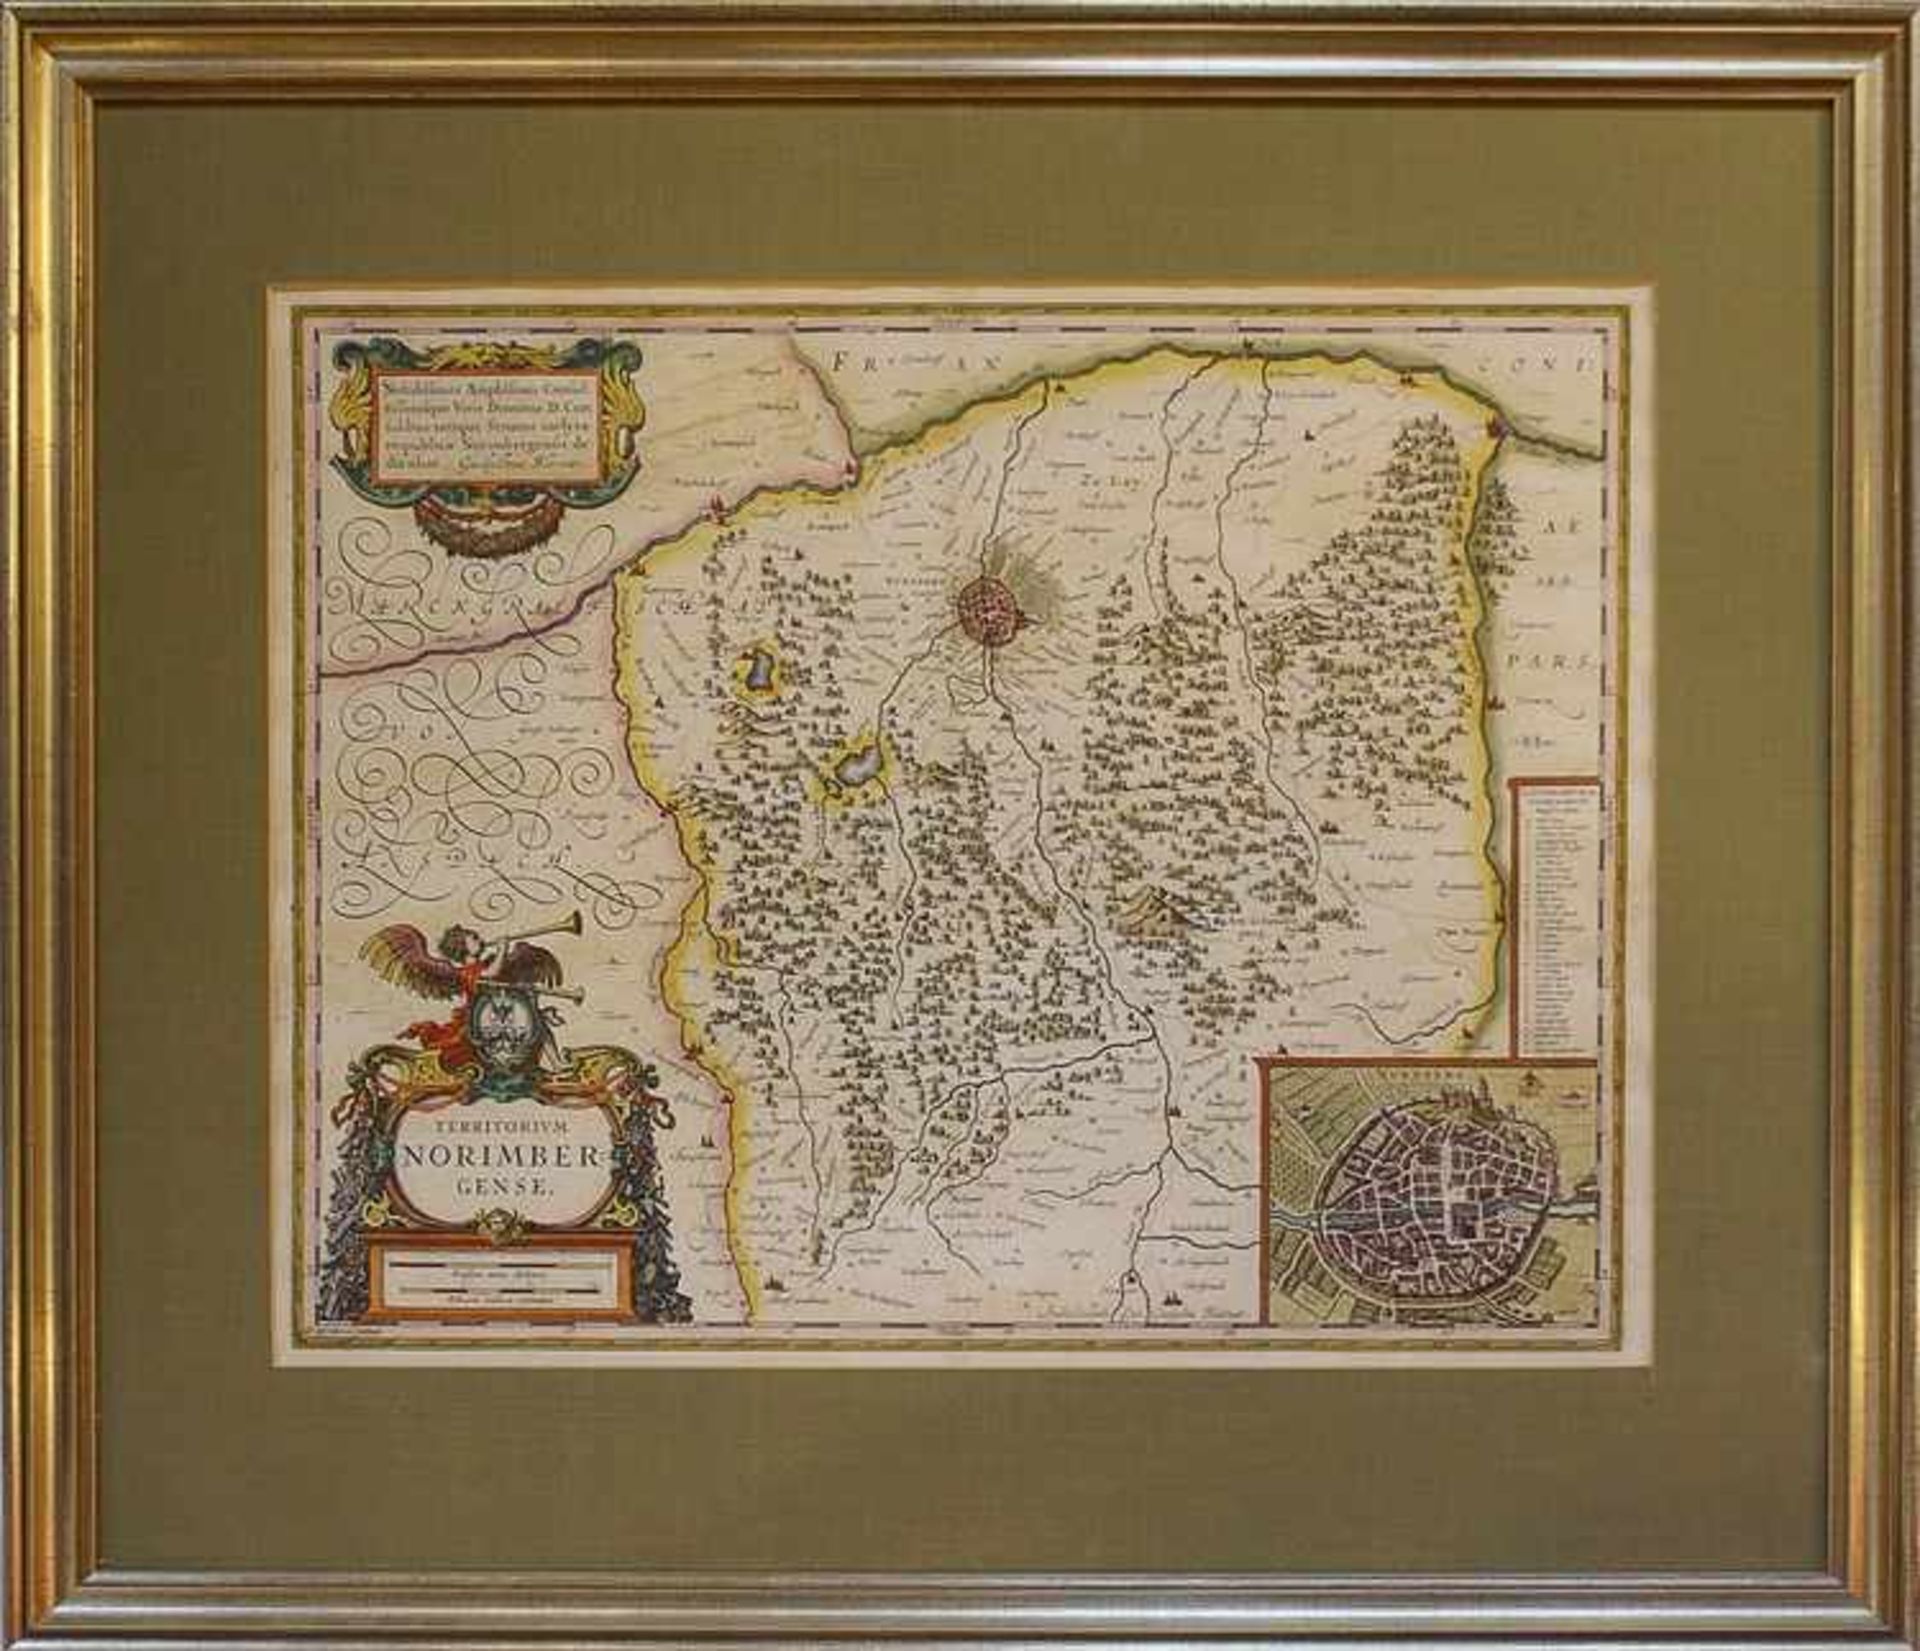 Blaeu, Willem - Nürnberg"Territorium Norimbergense", Kupferstichkarte von Nürnberg, teilkoloriert,